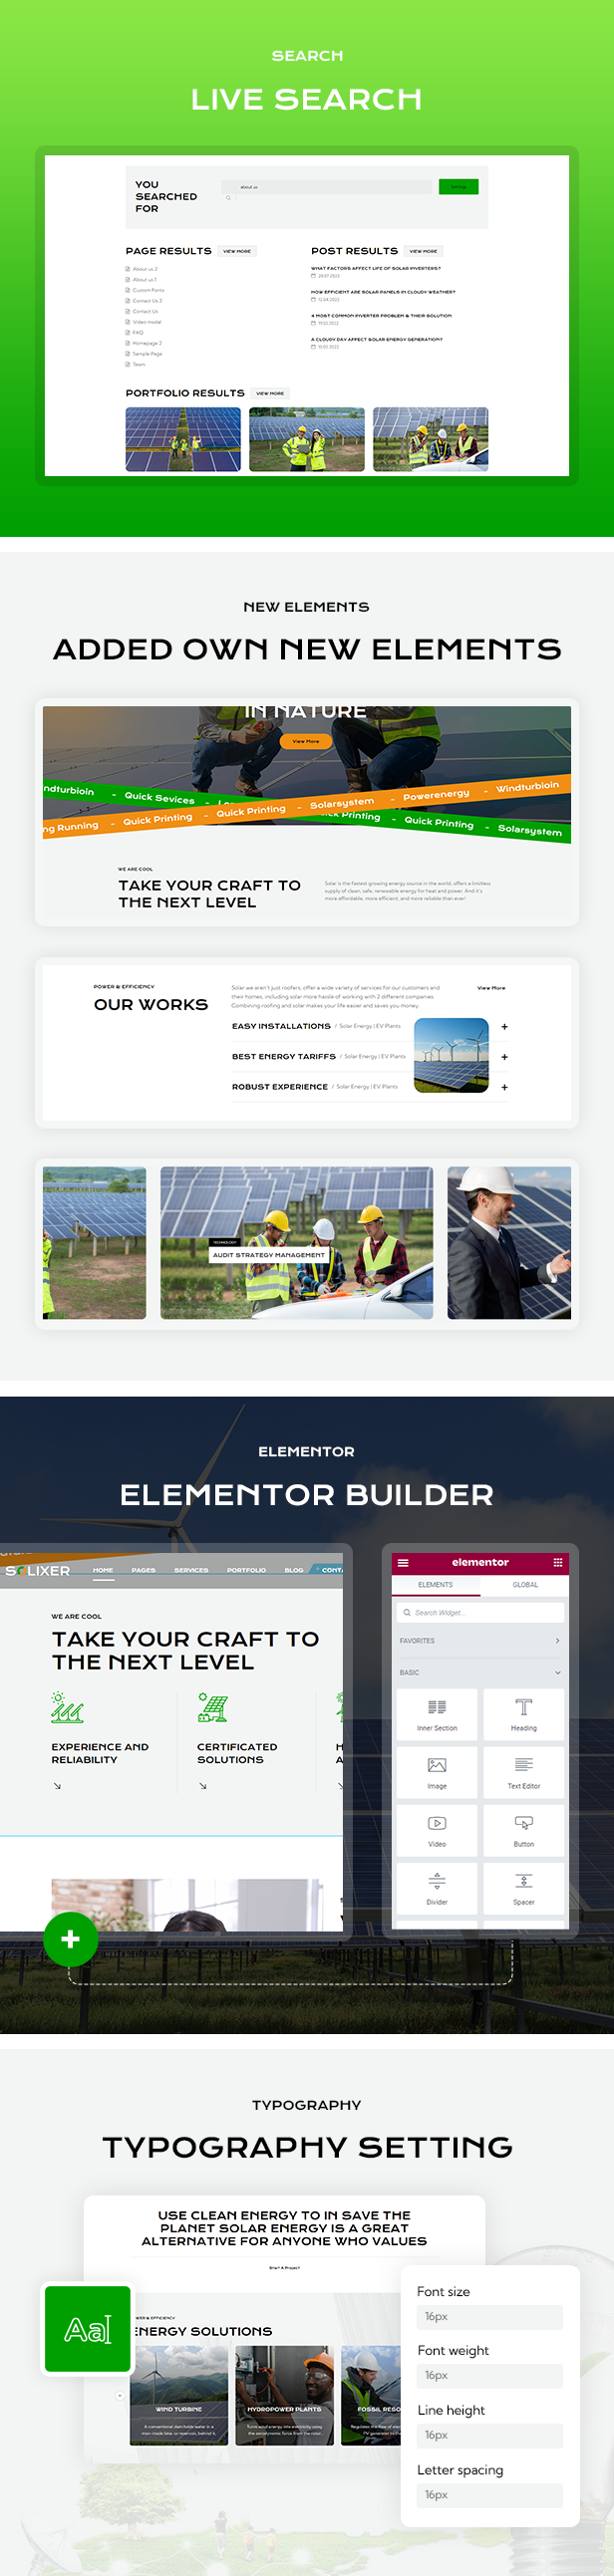 Ecology & Solar Energy WordPress Theme